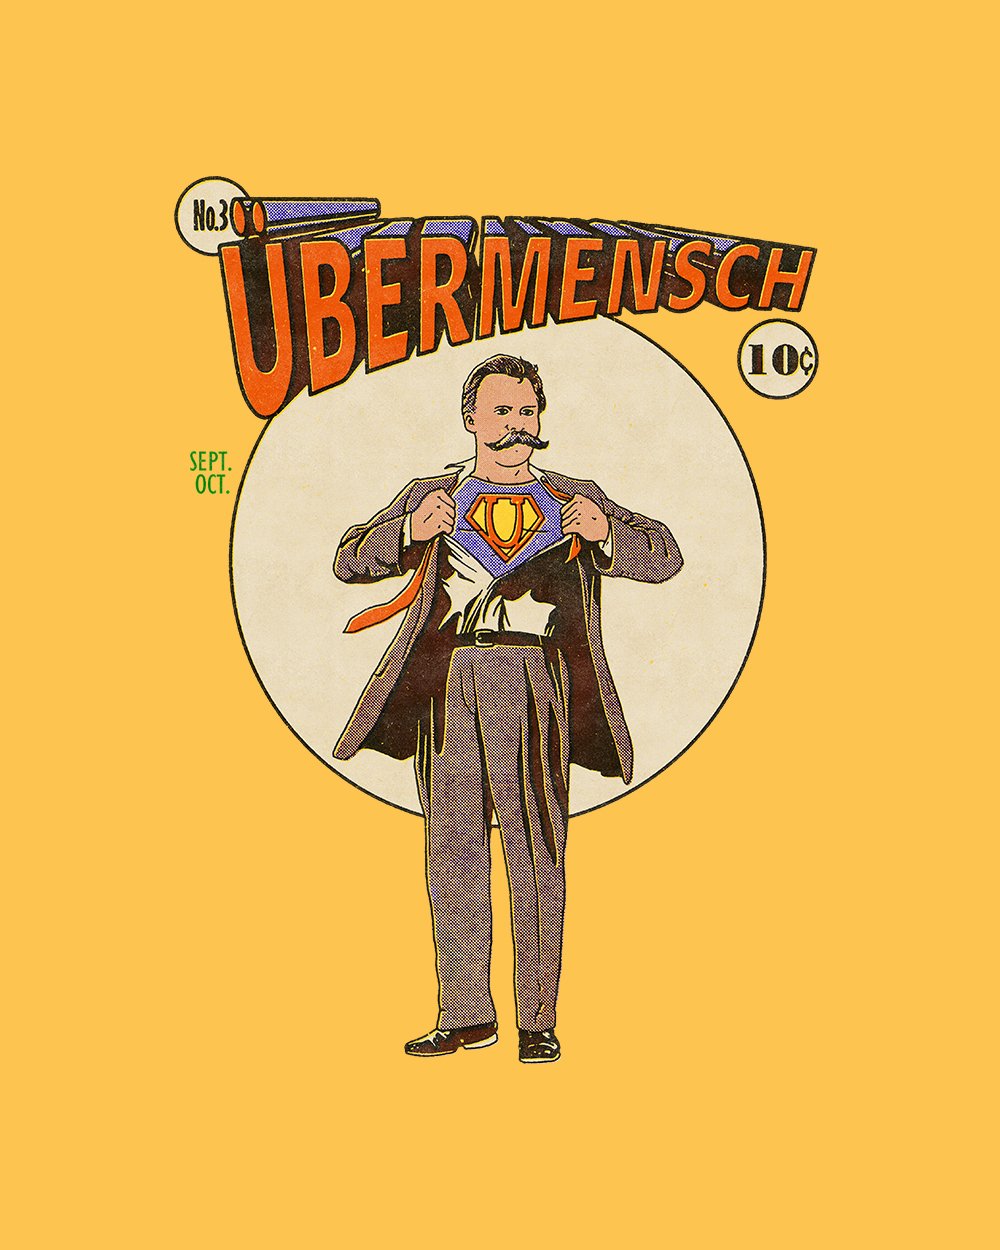 Ubermensch T-Shirt Australia Online #colour_yellow